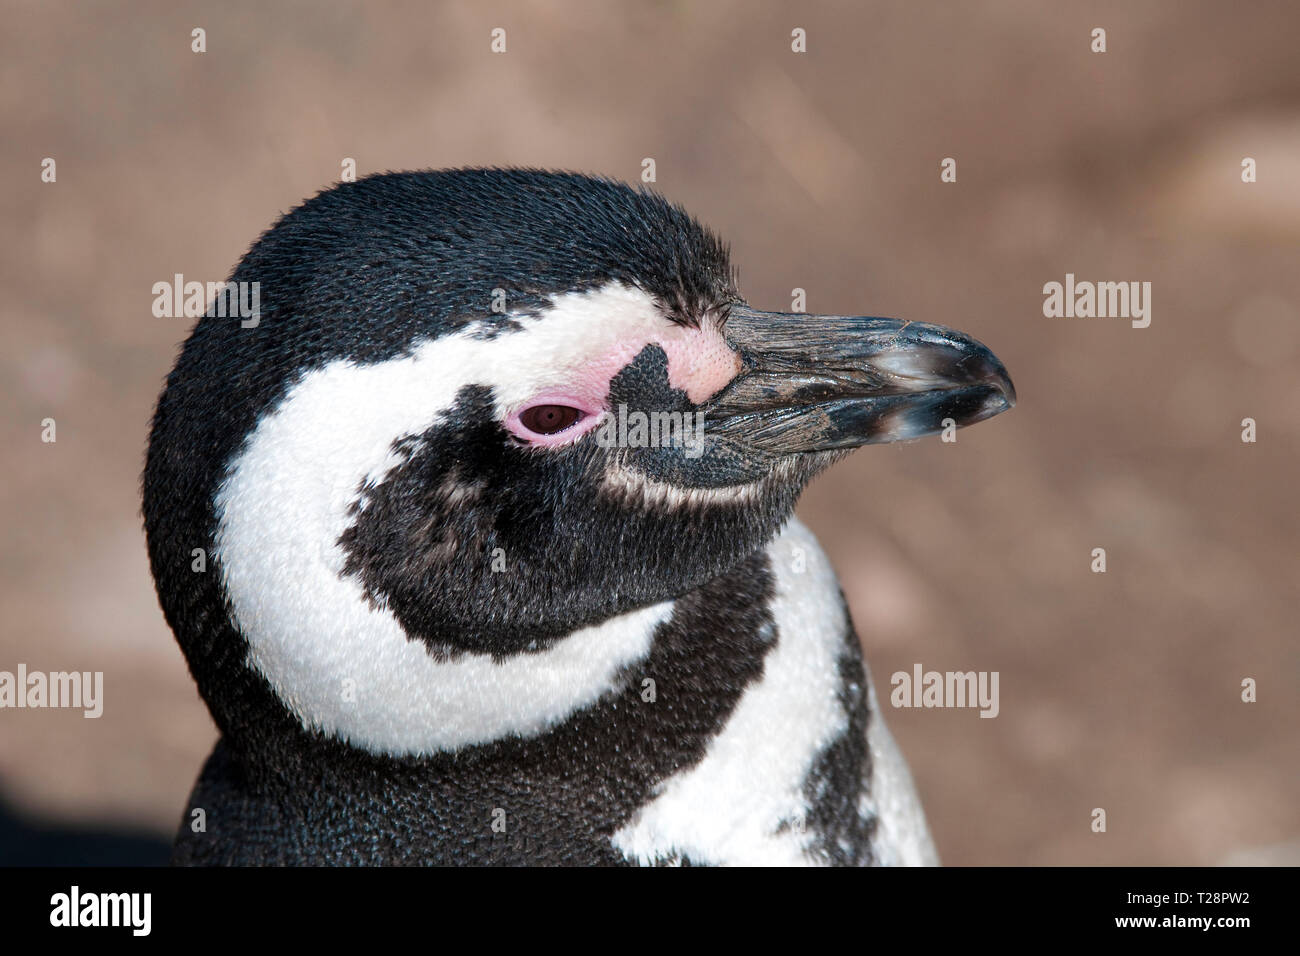 Magellanic penguin (Spheniscus magellanicus), portrait, Valdes peninsula, Patagonia, Argentina Stock Photo